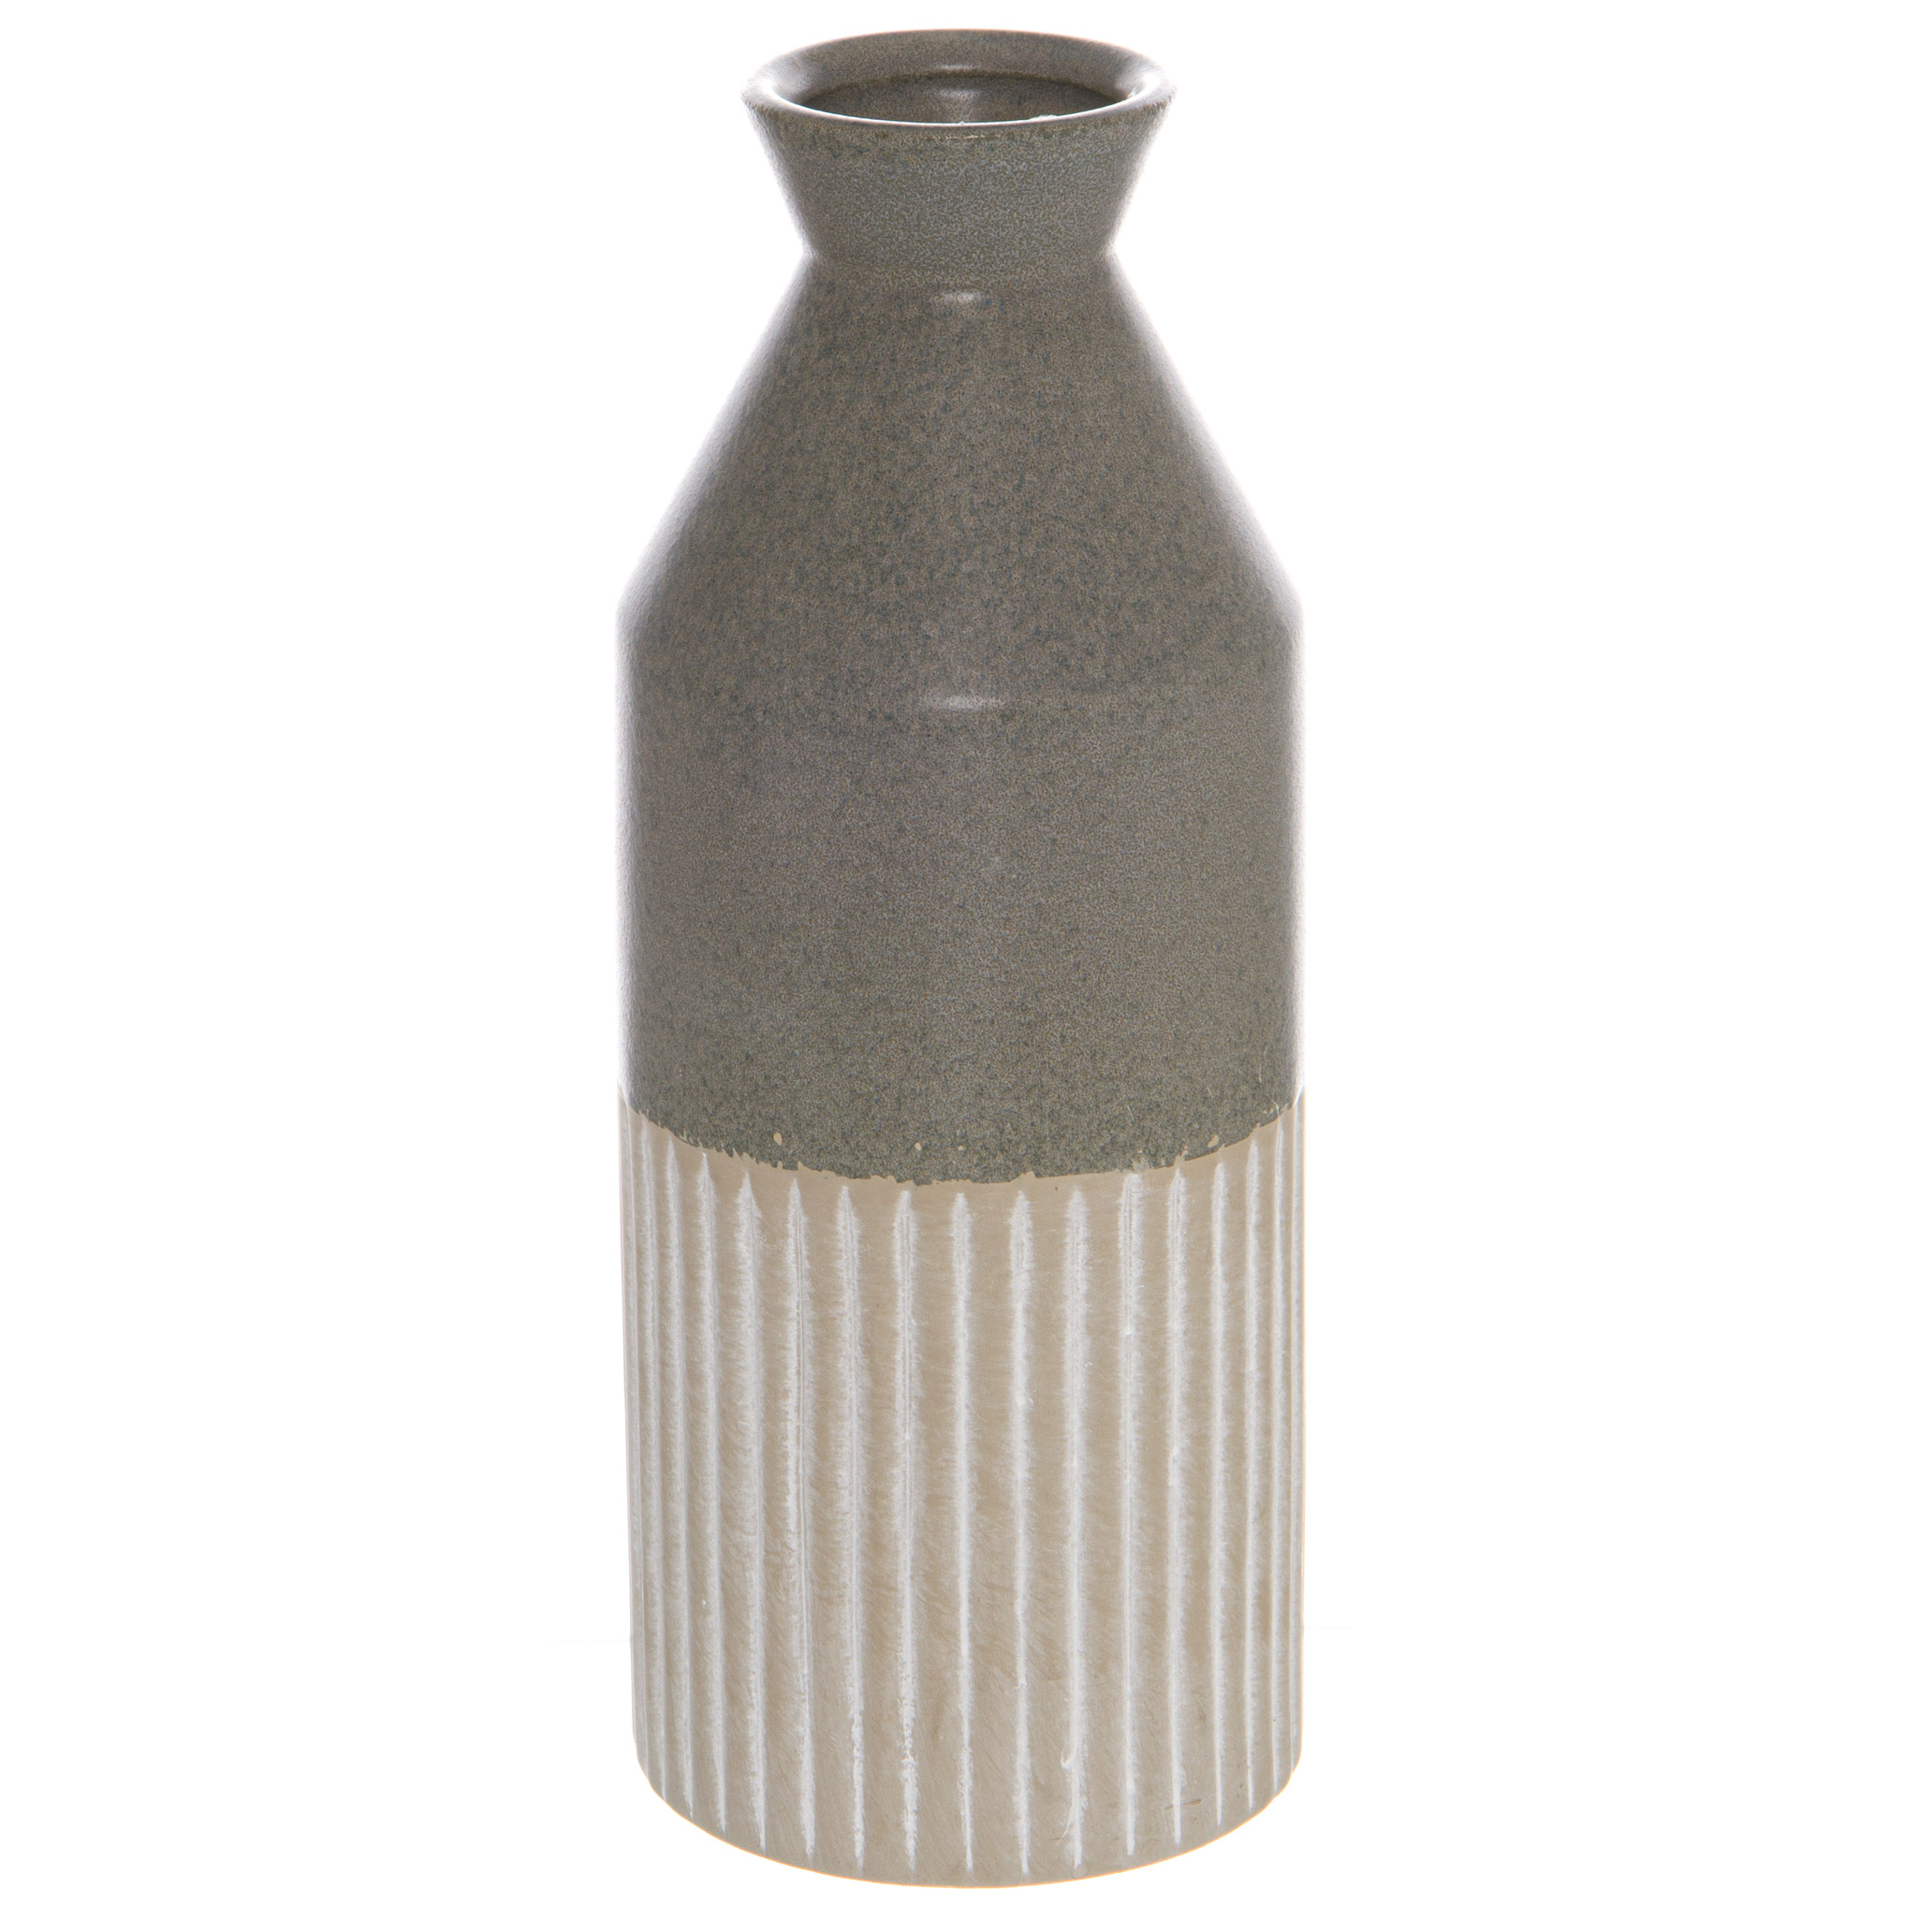 Mason Collection Grey Ceramic Ellipse Vase - Image 1